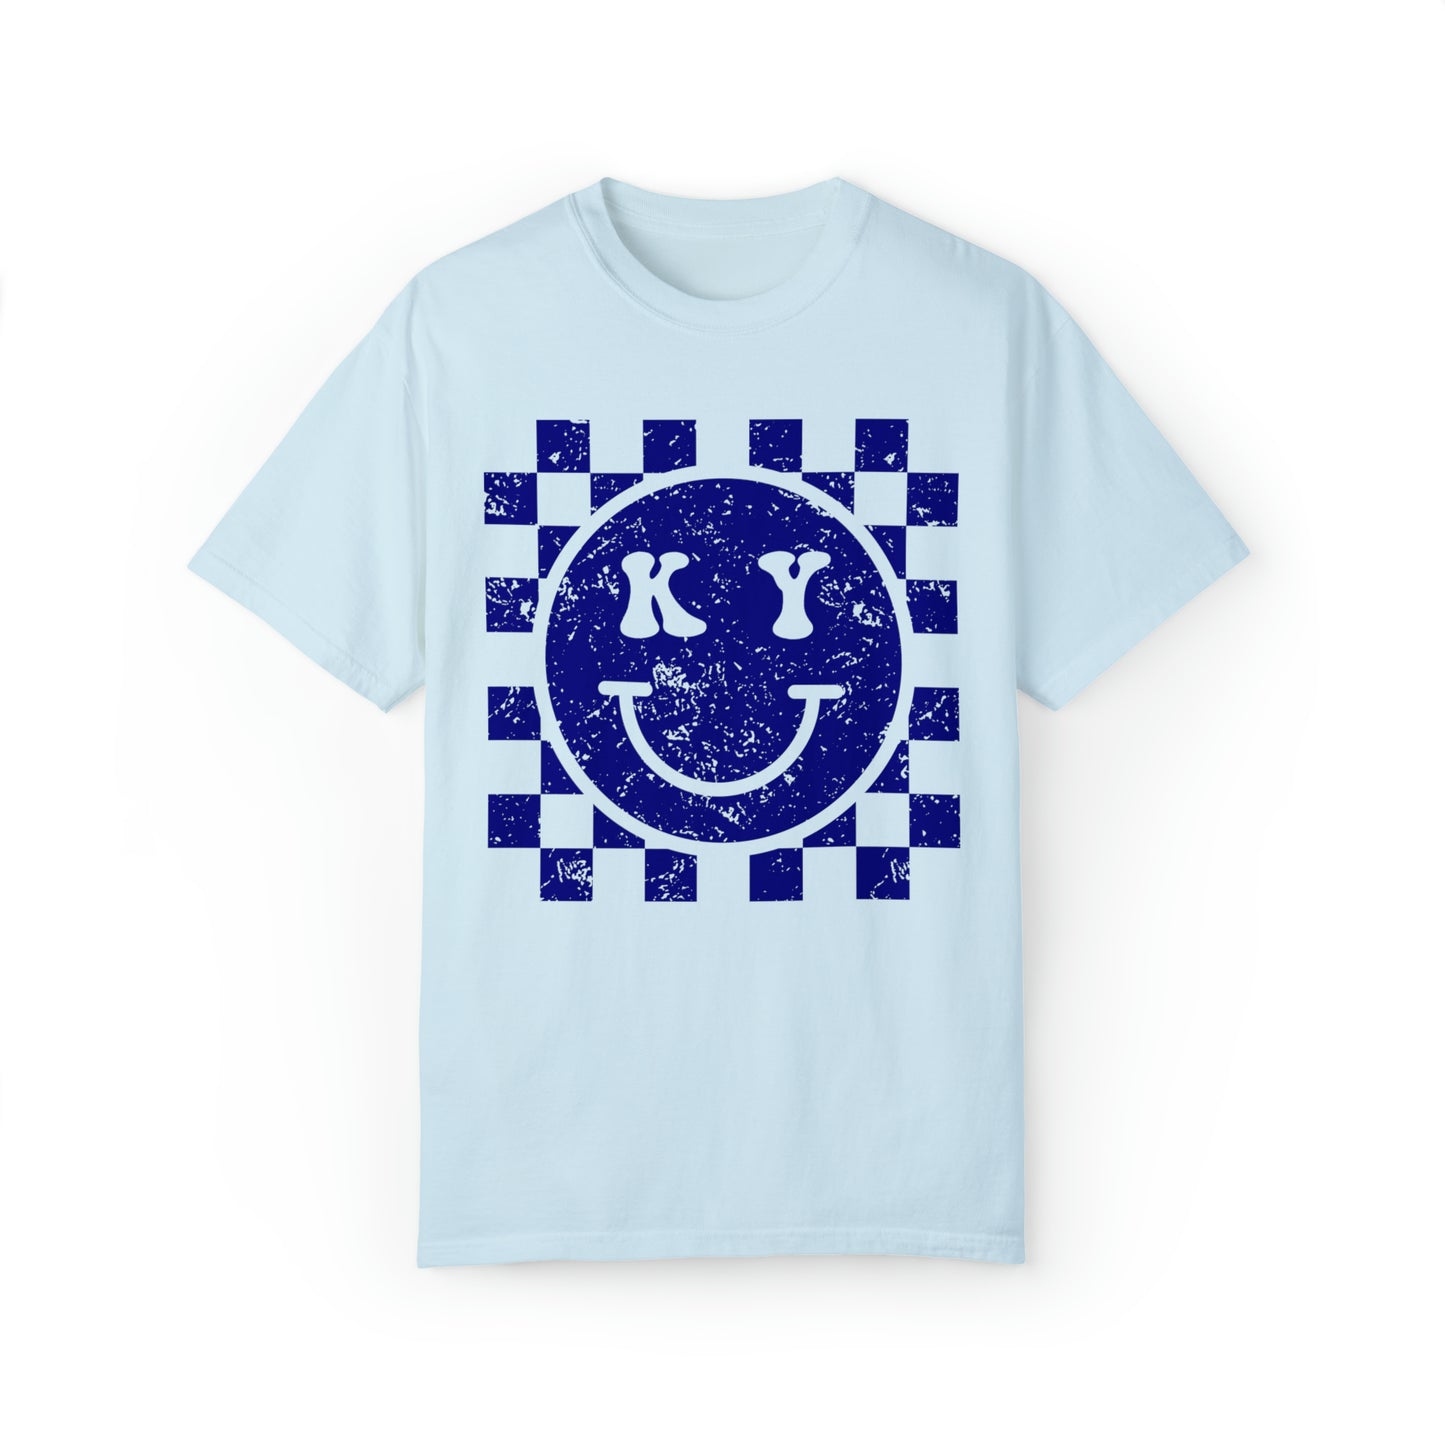 Kentucky Checkered Smiley Face Shirt